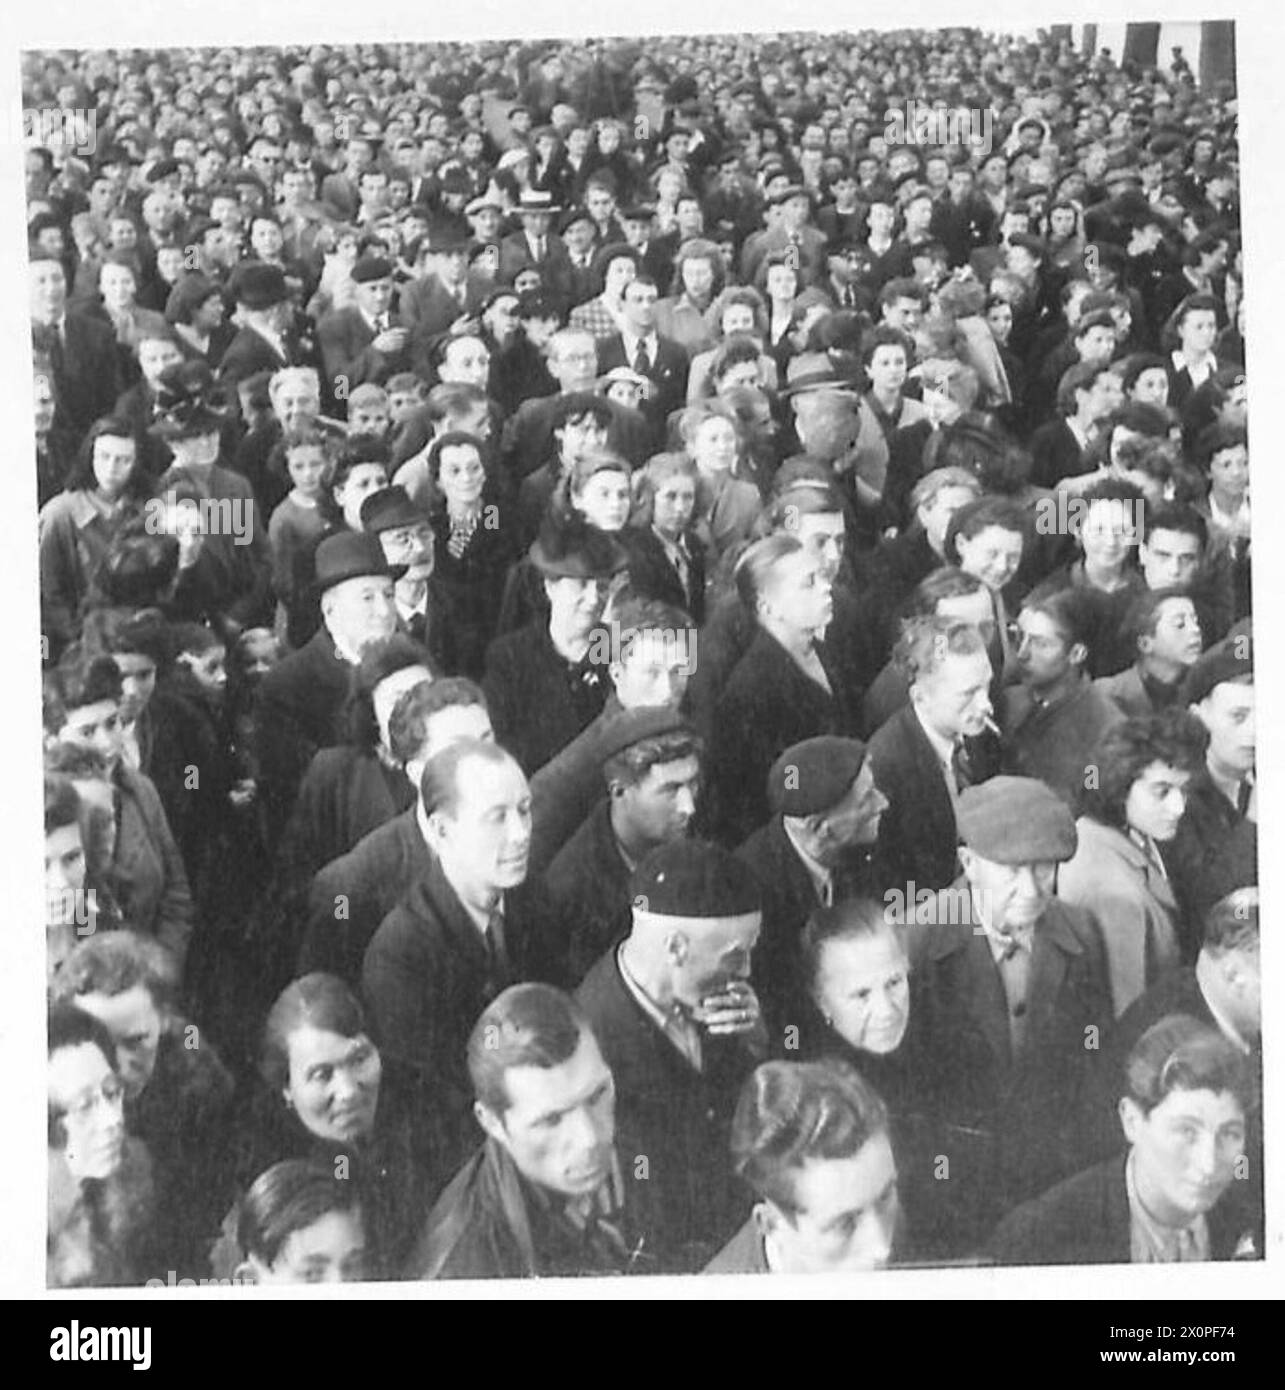 LA LIBÉRATION DE BAYEUX JUIN 1944 - foules écoutant les discours des membres des forces alliées et de la résistance française dans le centre de Bayeux, 9 juin 1944 Banque D'Images